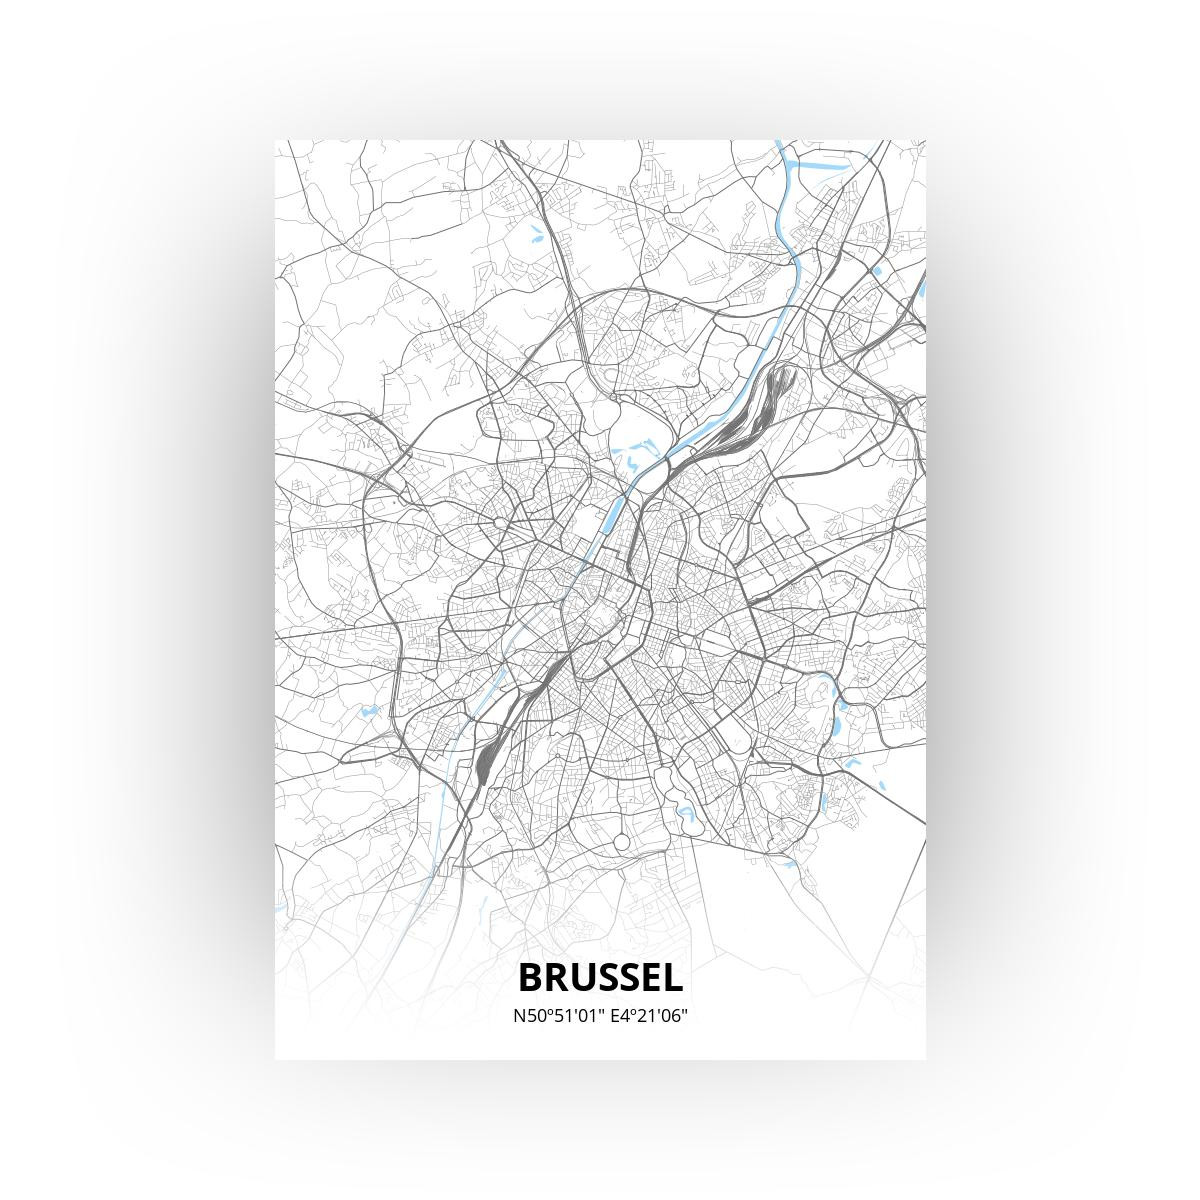 Brussel poster - Zelf aan te passen!